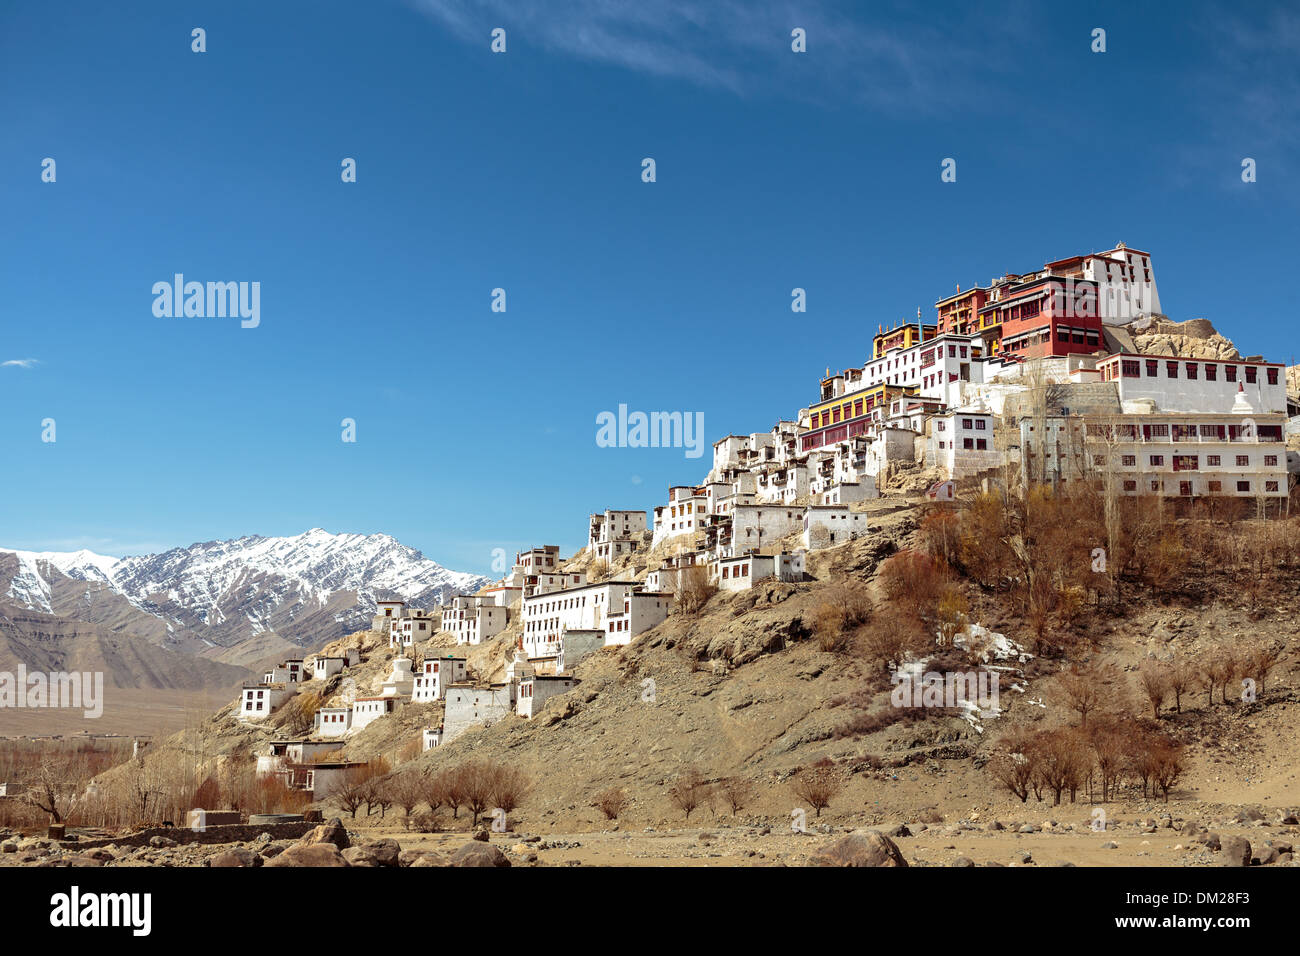 Le monastère de Thiksey au sommet d'un éperon rocheux dans la vallée de l'Indus du Ladakh, Inde du nord. C'est un bouddhiste de style tibétain Gompa. Banque D'Images